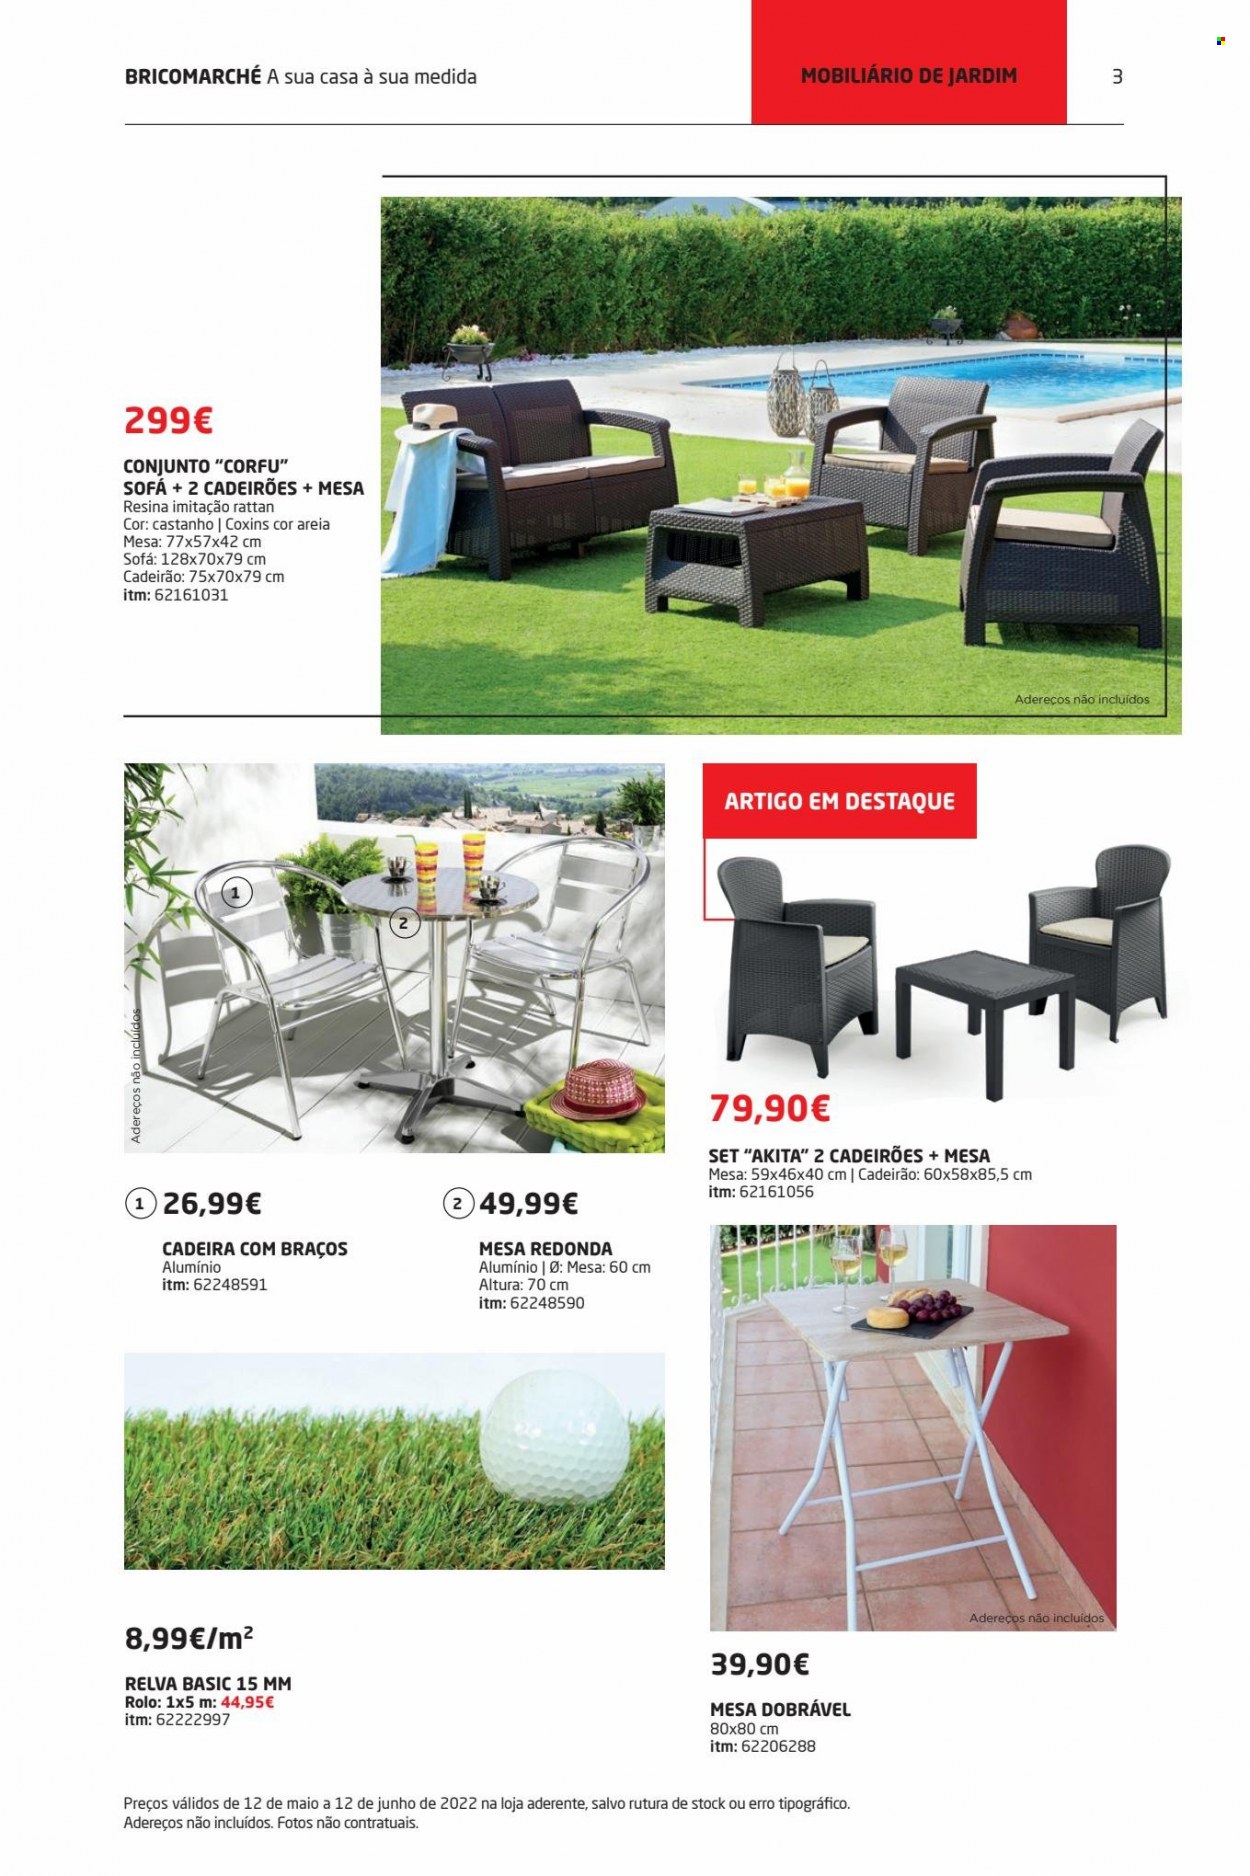 thumbnail - Folheto Bricomarché - 12.5.2022 - 12.6.2022 - Produtos em promoção - mesa, mesa dobrável, cadeira, sofá. Página 3.